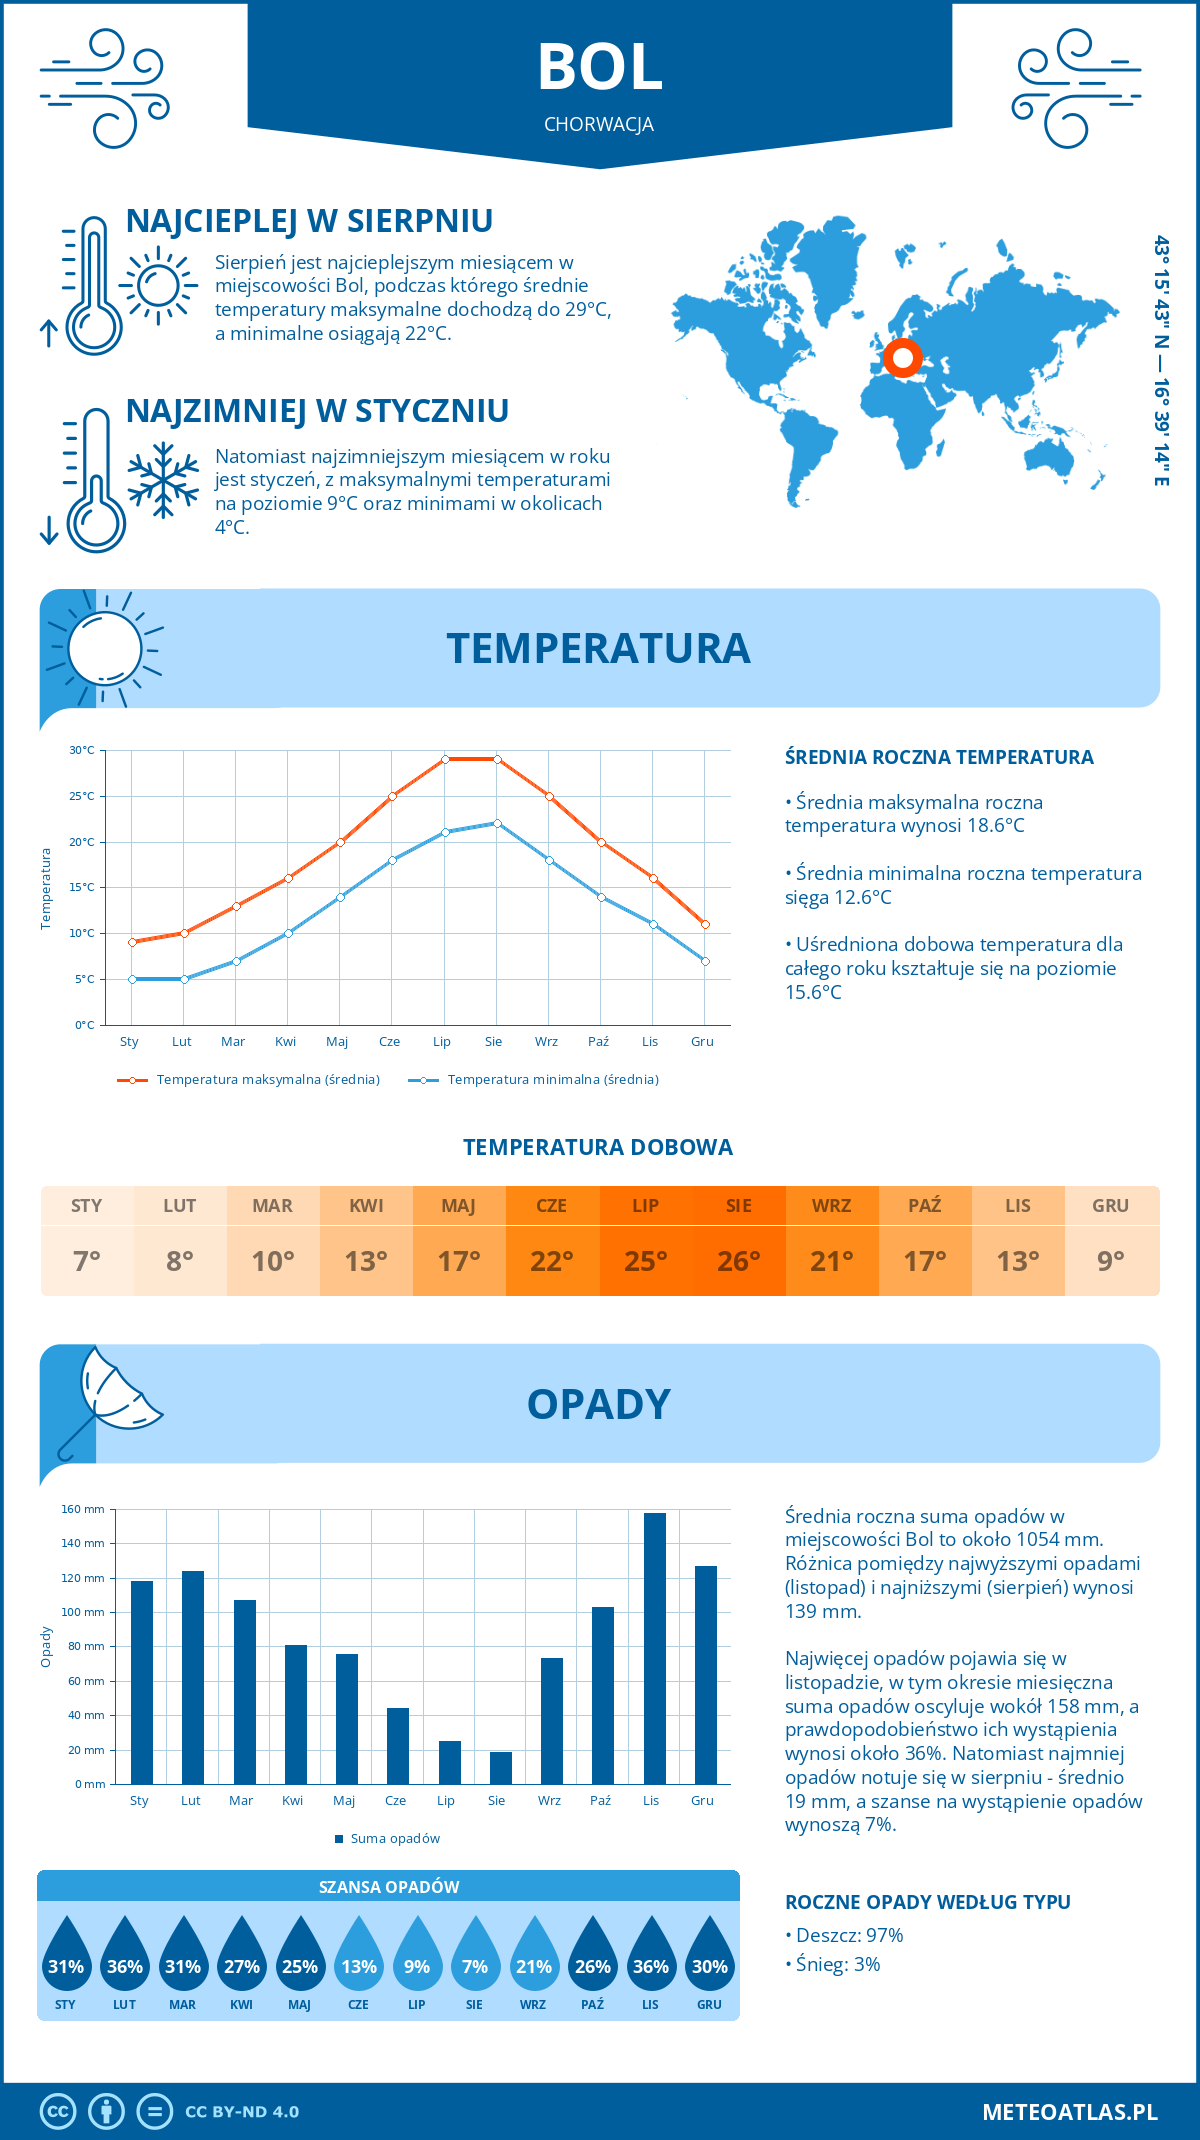 Pogoda Bol (Chorwacja). Temperatura oraz opady.